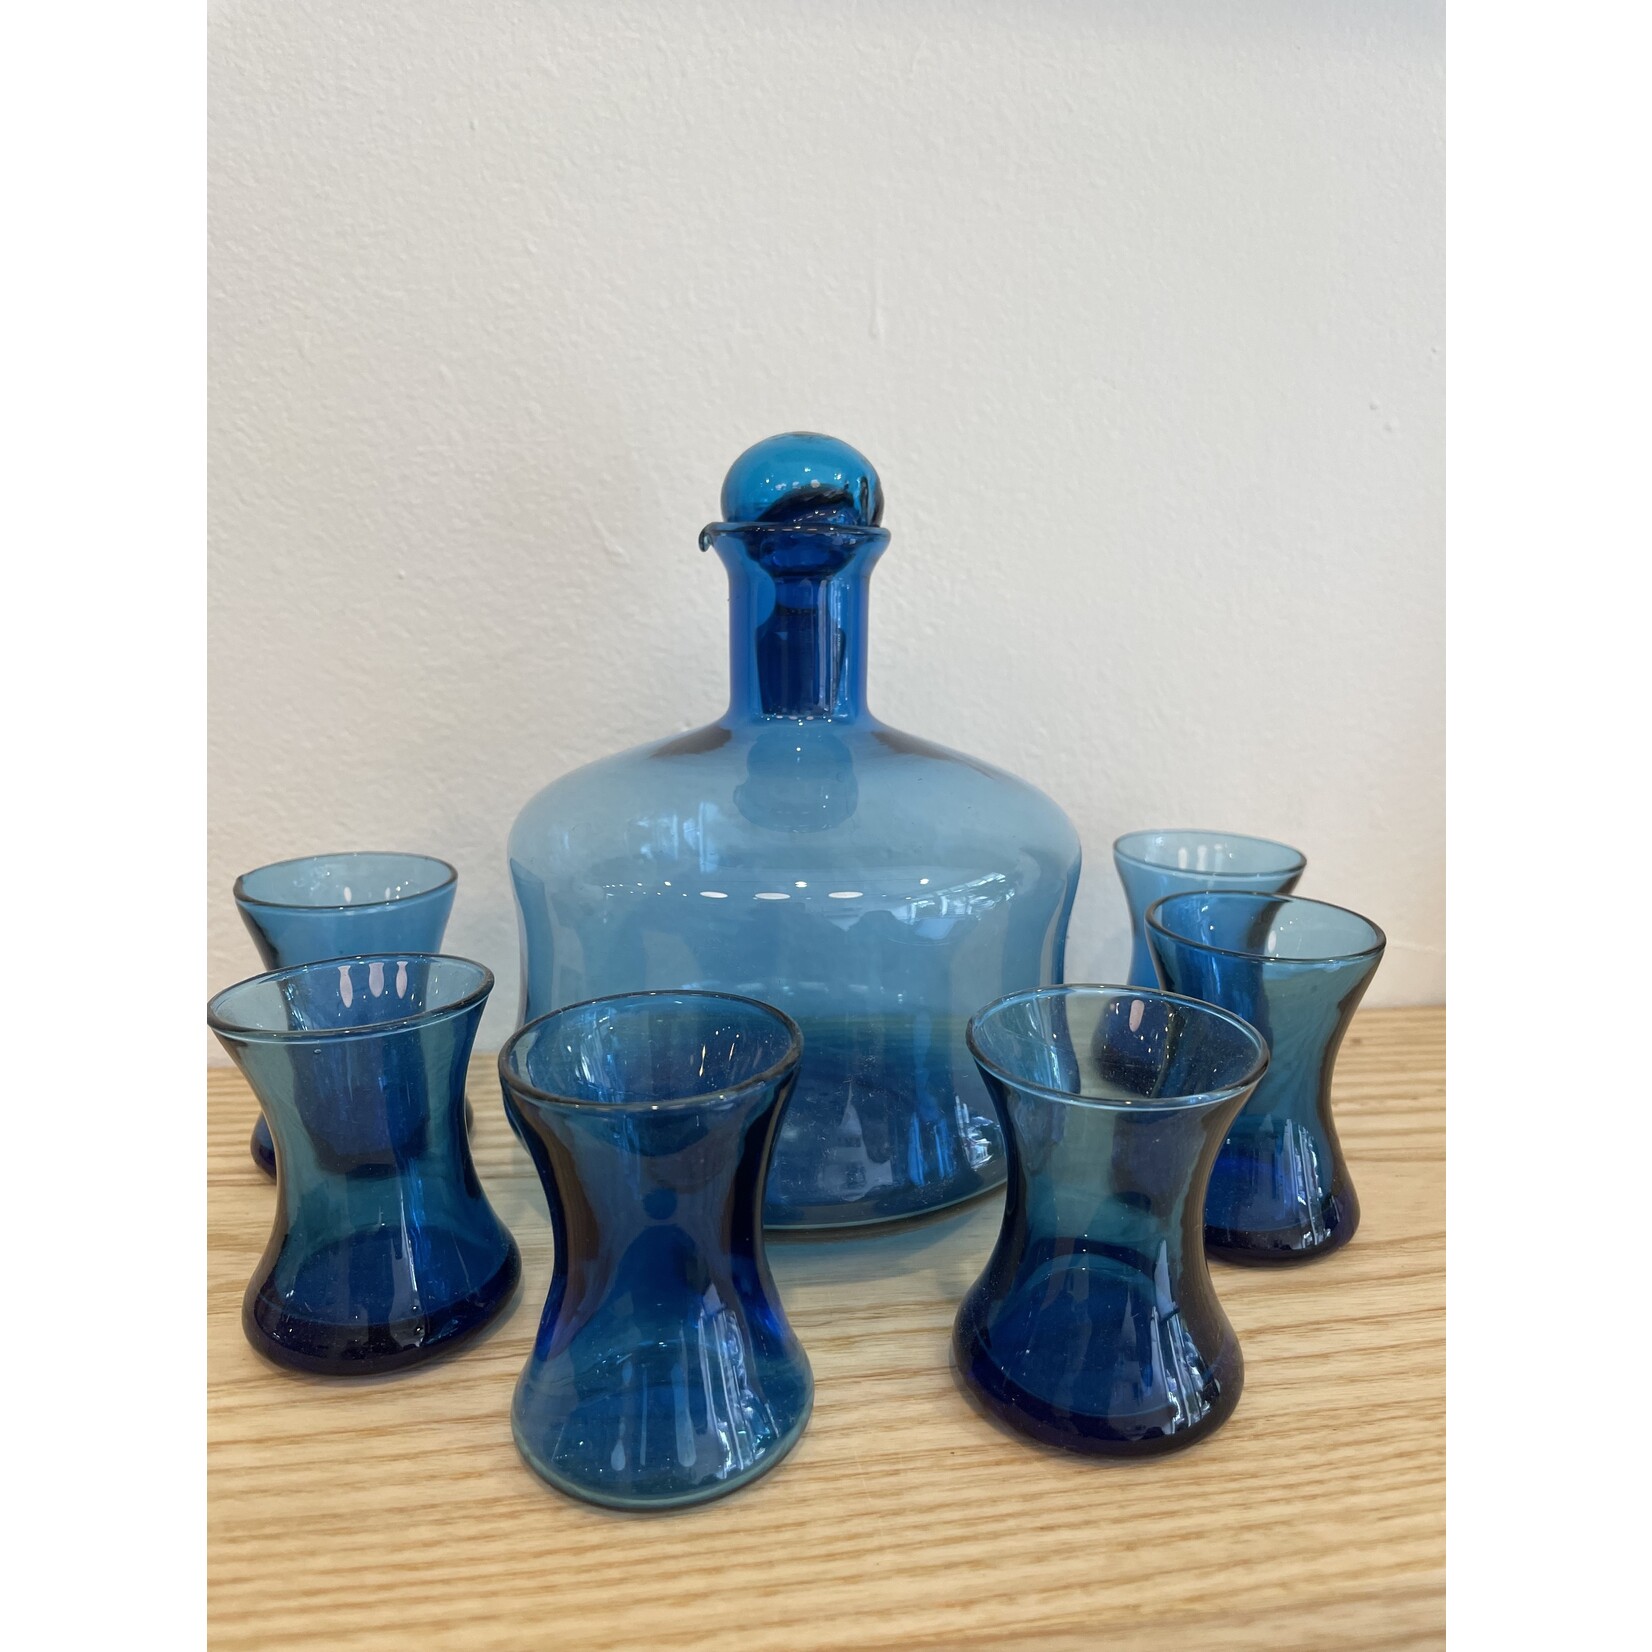 ATLVNTG Vintage Pitman Dreitzer Blue Cocktail Set - Includes Decanter and 6 Tasting Glasses